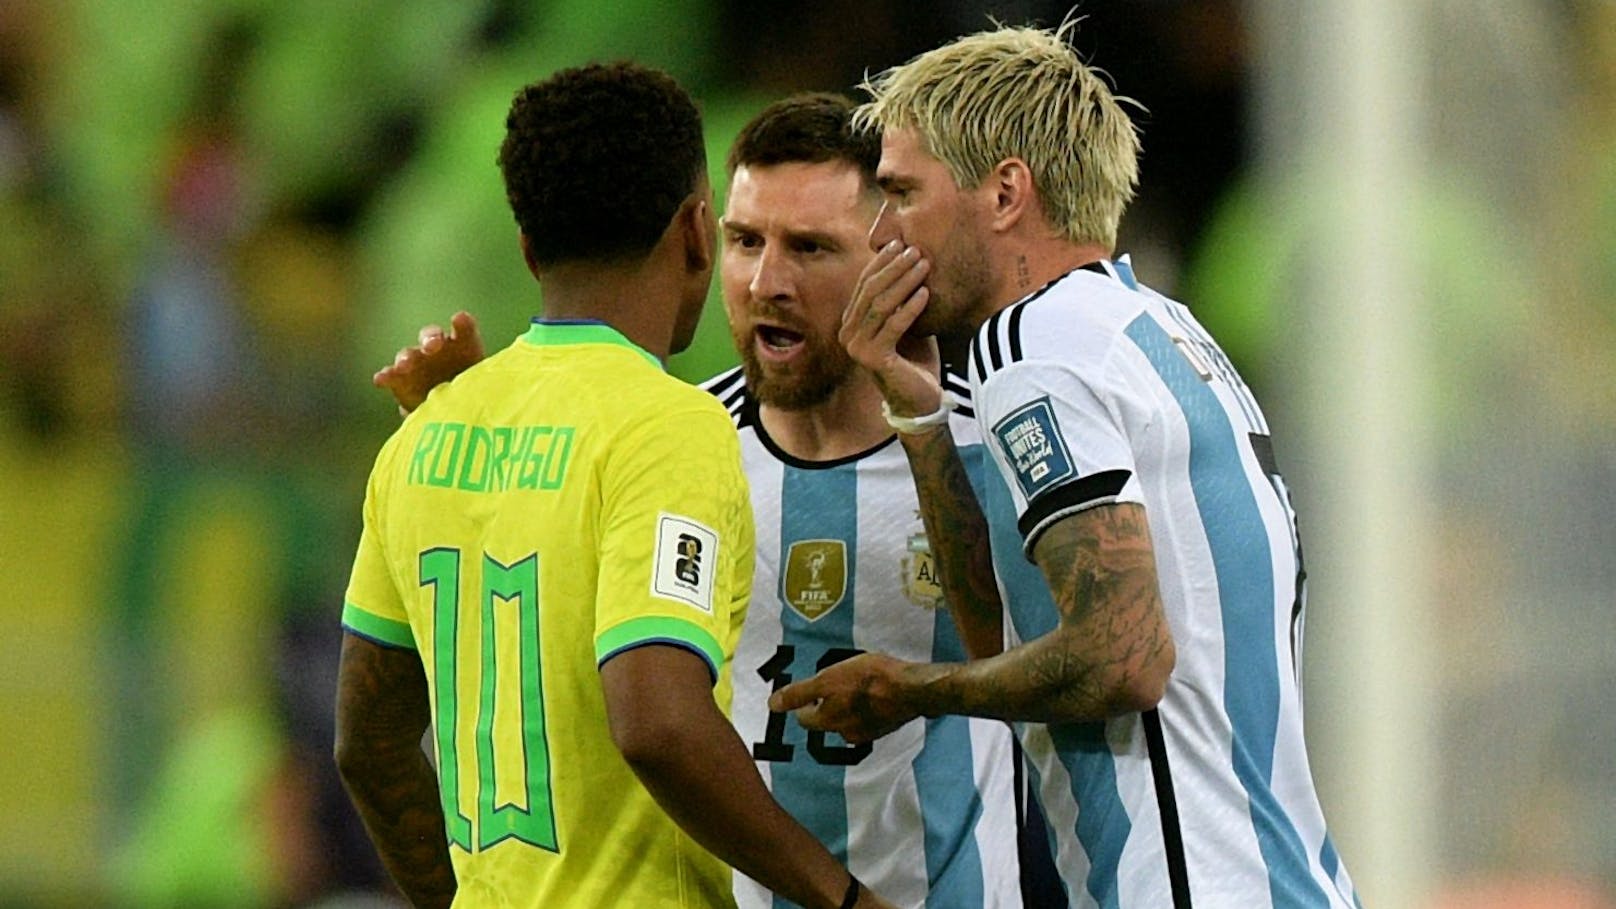 Vater von Brasilien-Star teilt gegen Messi aus